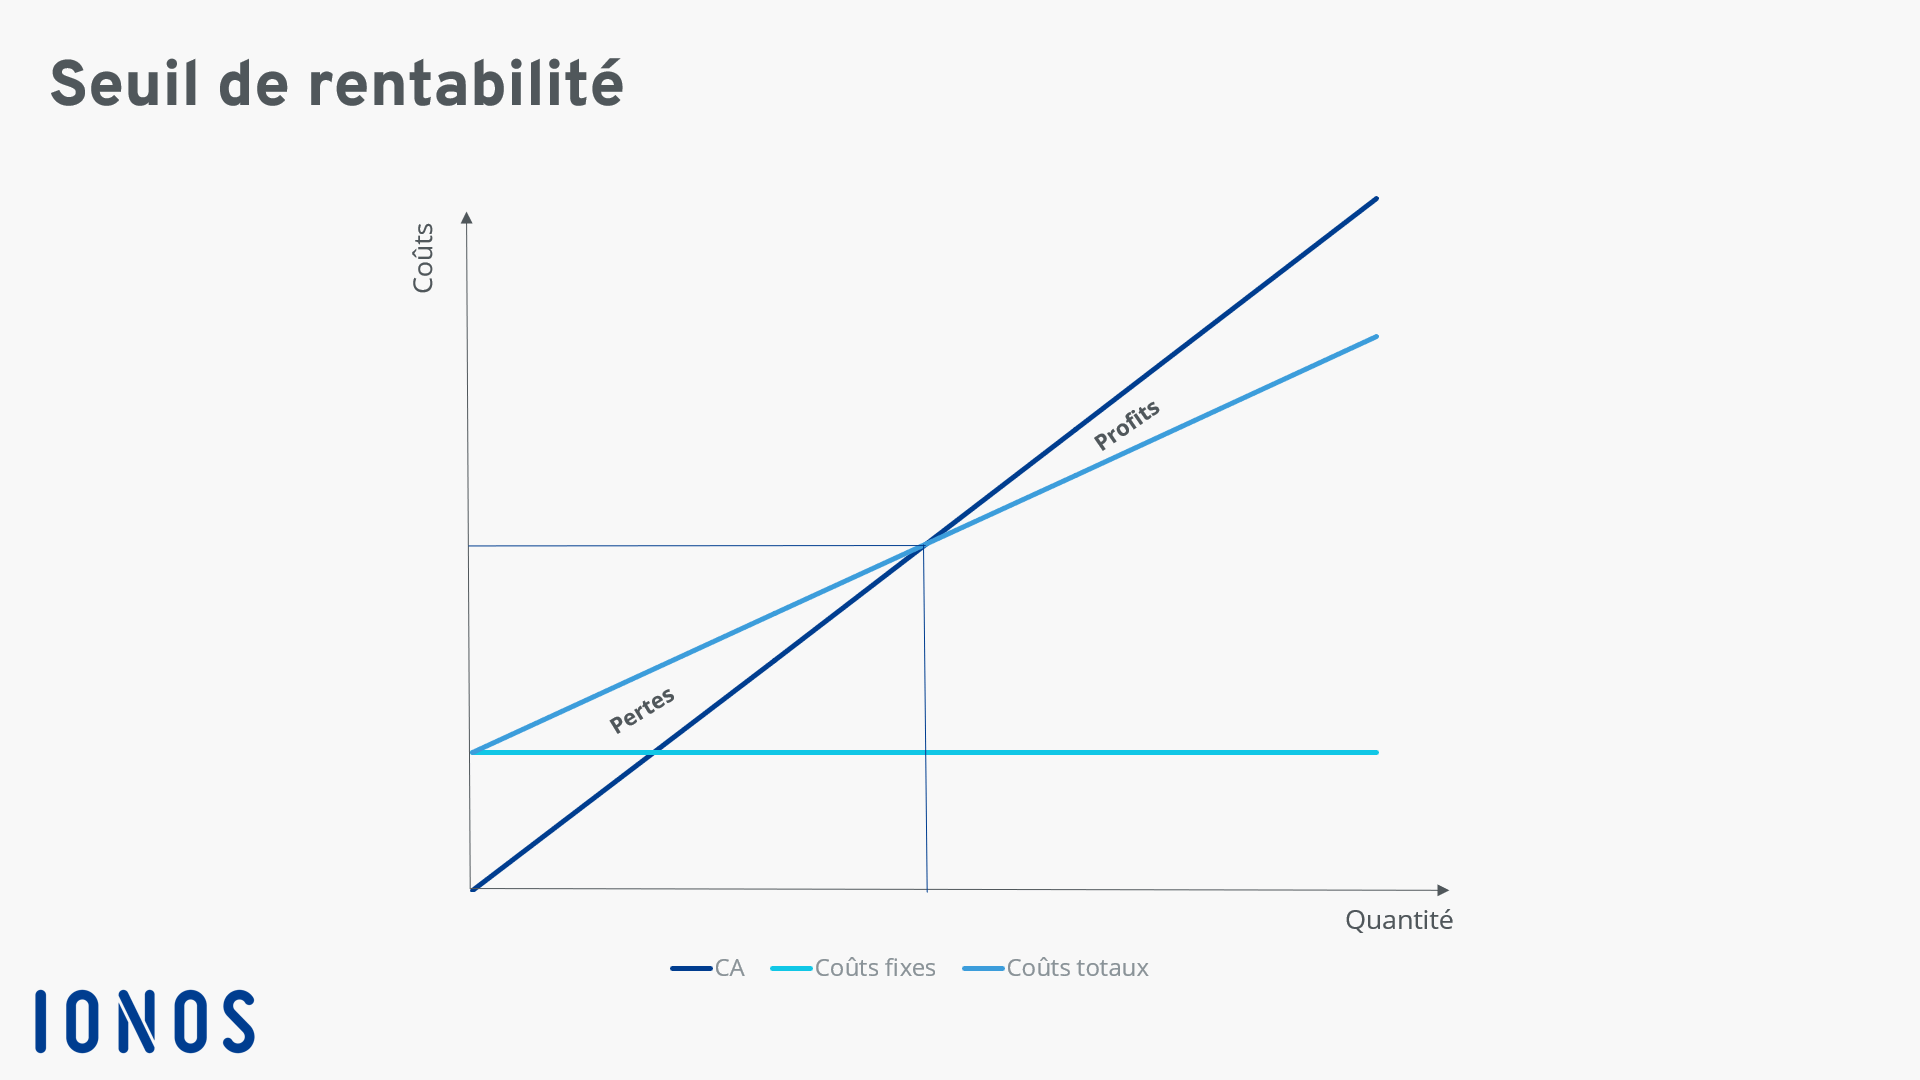 Représentation graphique du seuil de rentabilité, situé à l’intersection des courbes chiffre d’affaires et charges totales